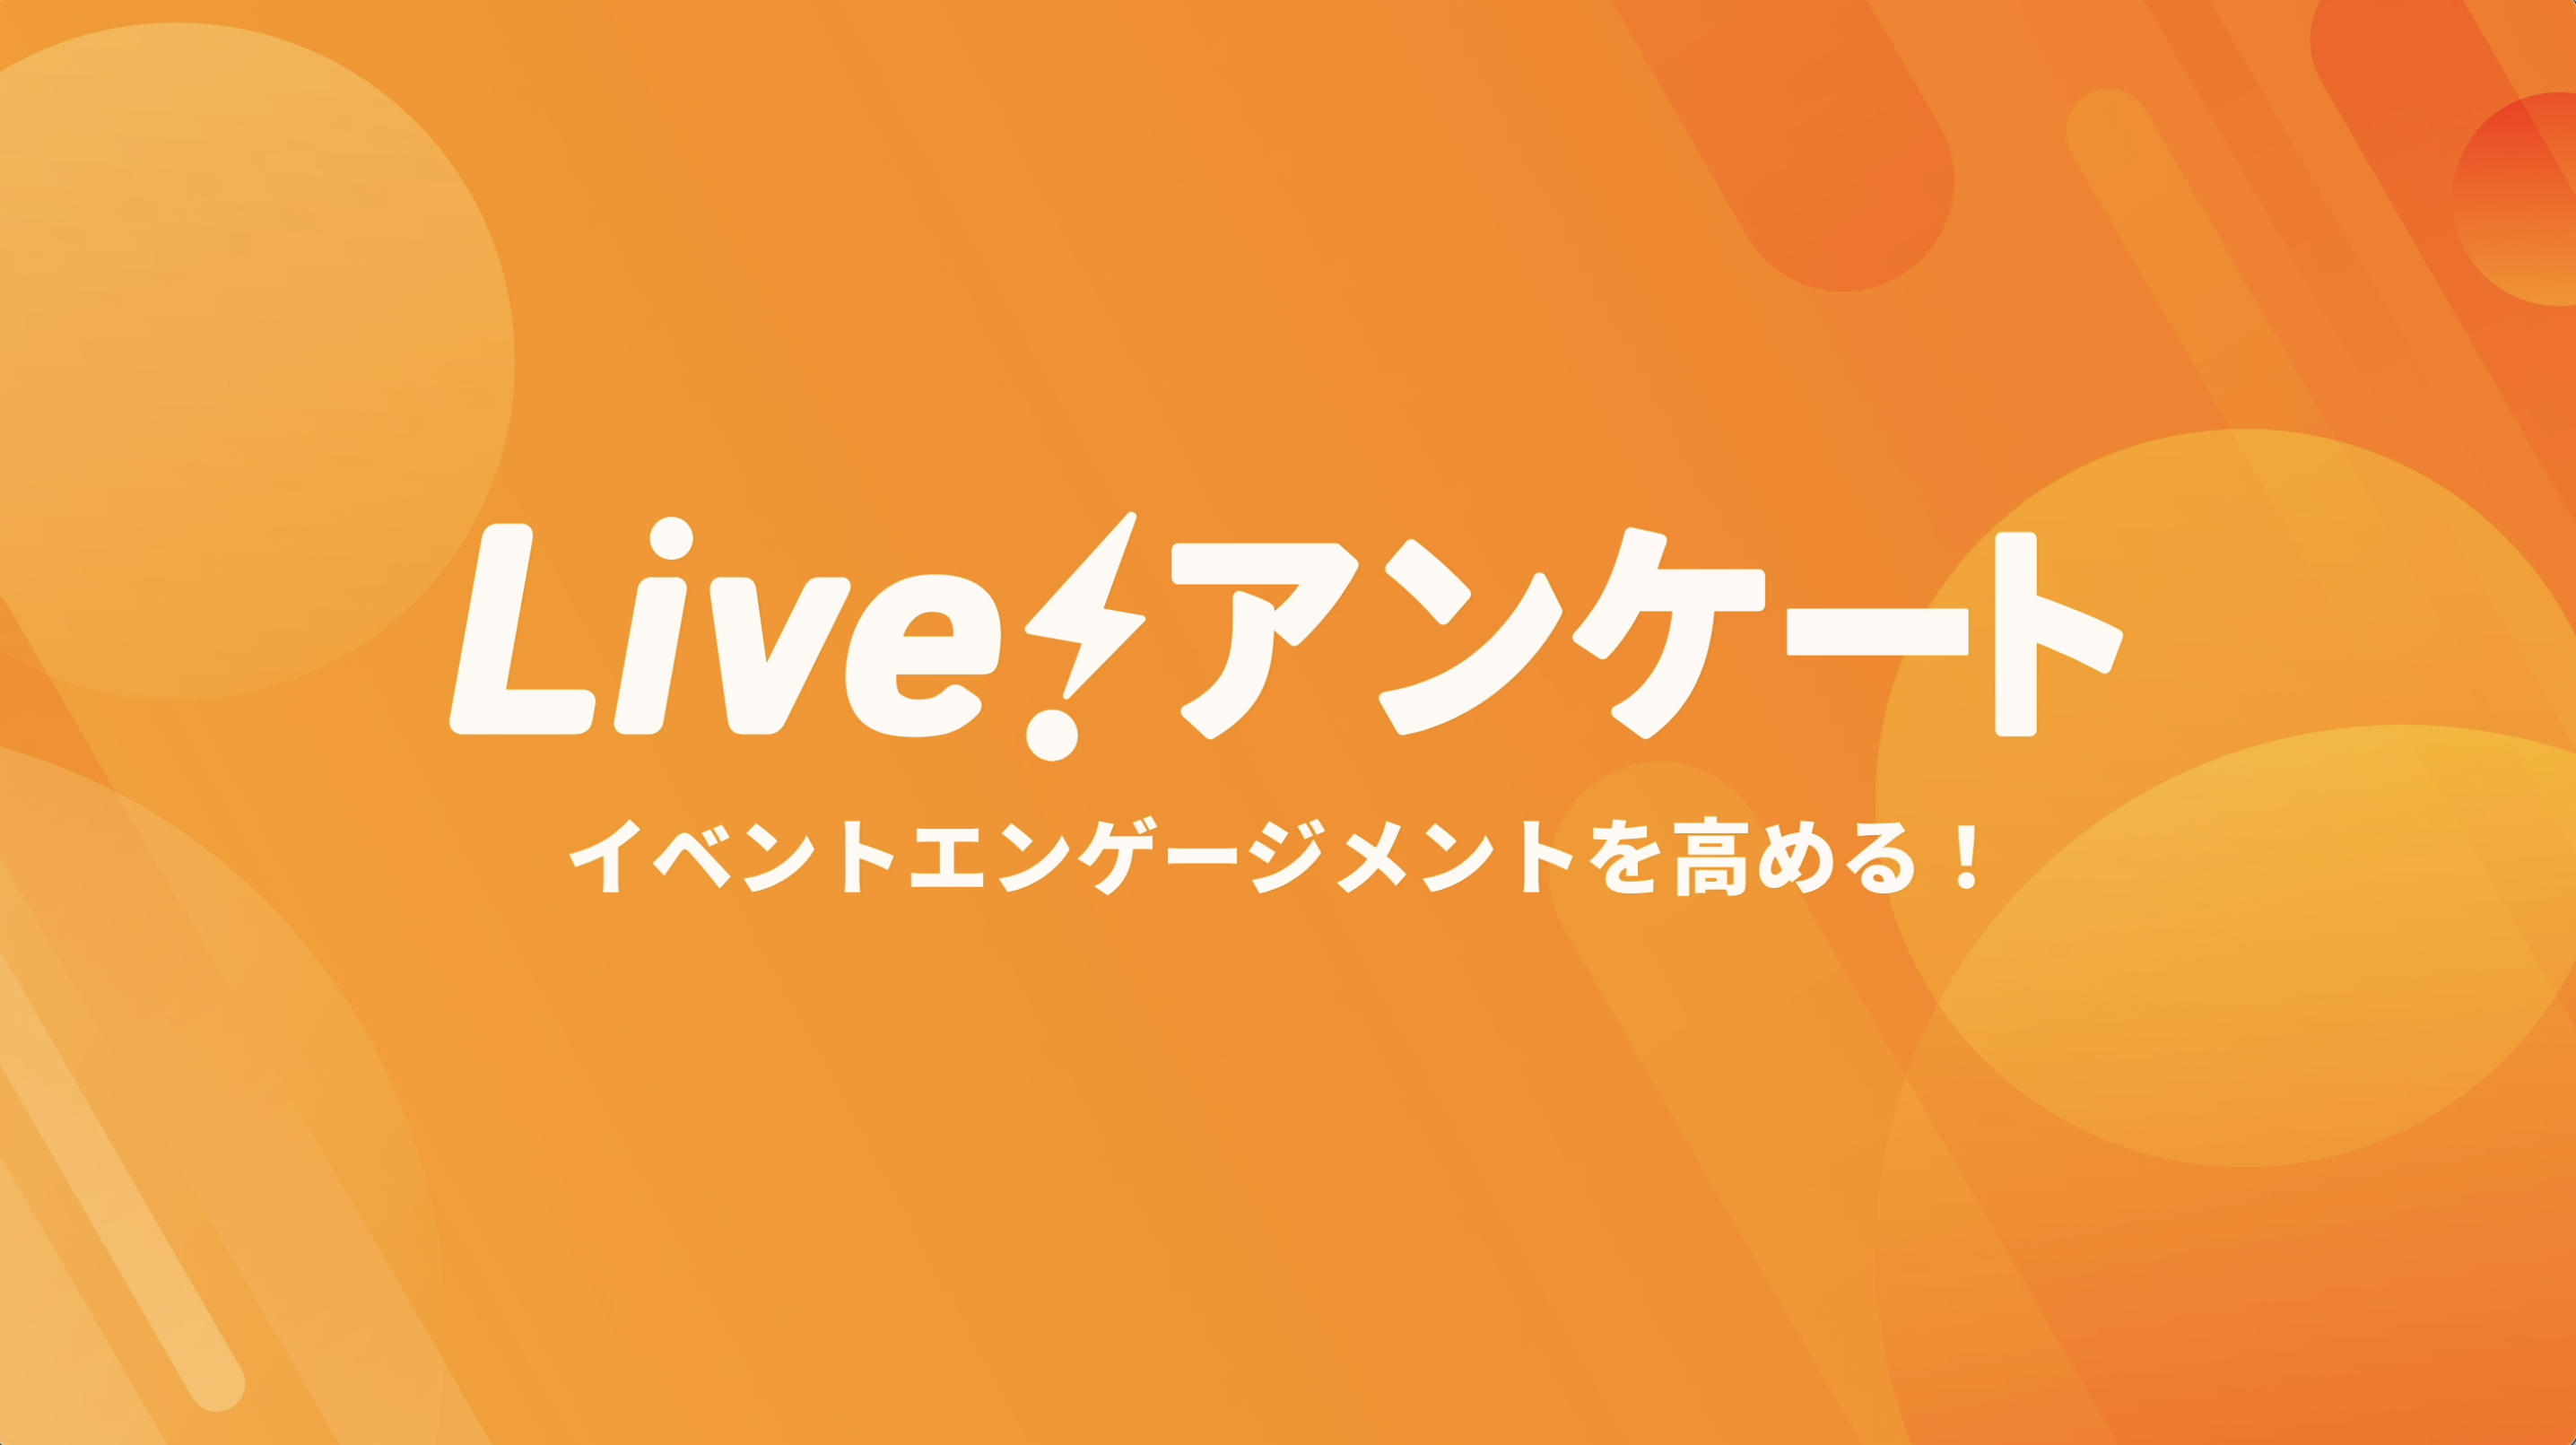 Live アンケート 無料でカンタン リアルタイムアンケート